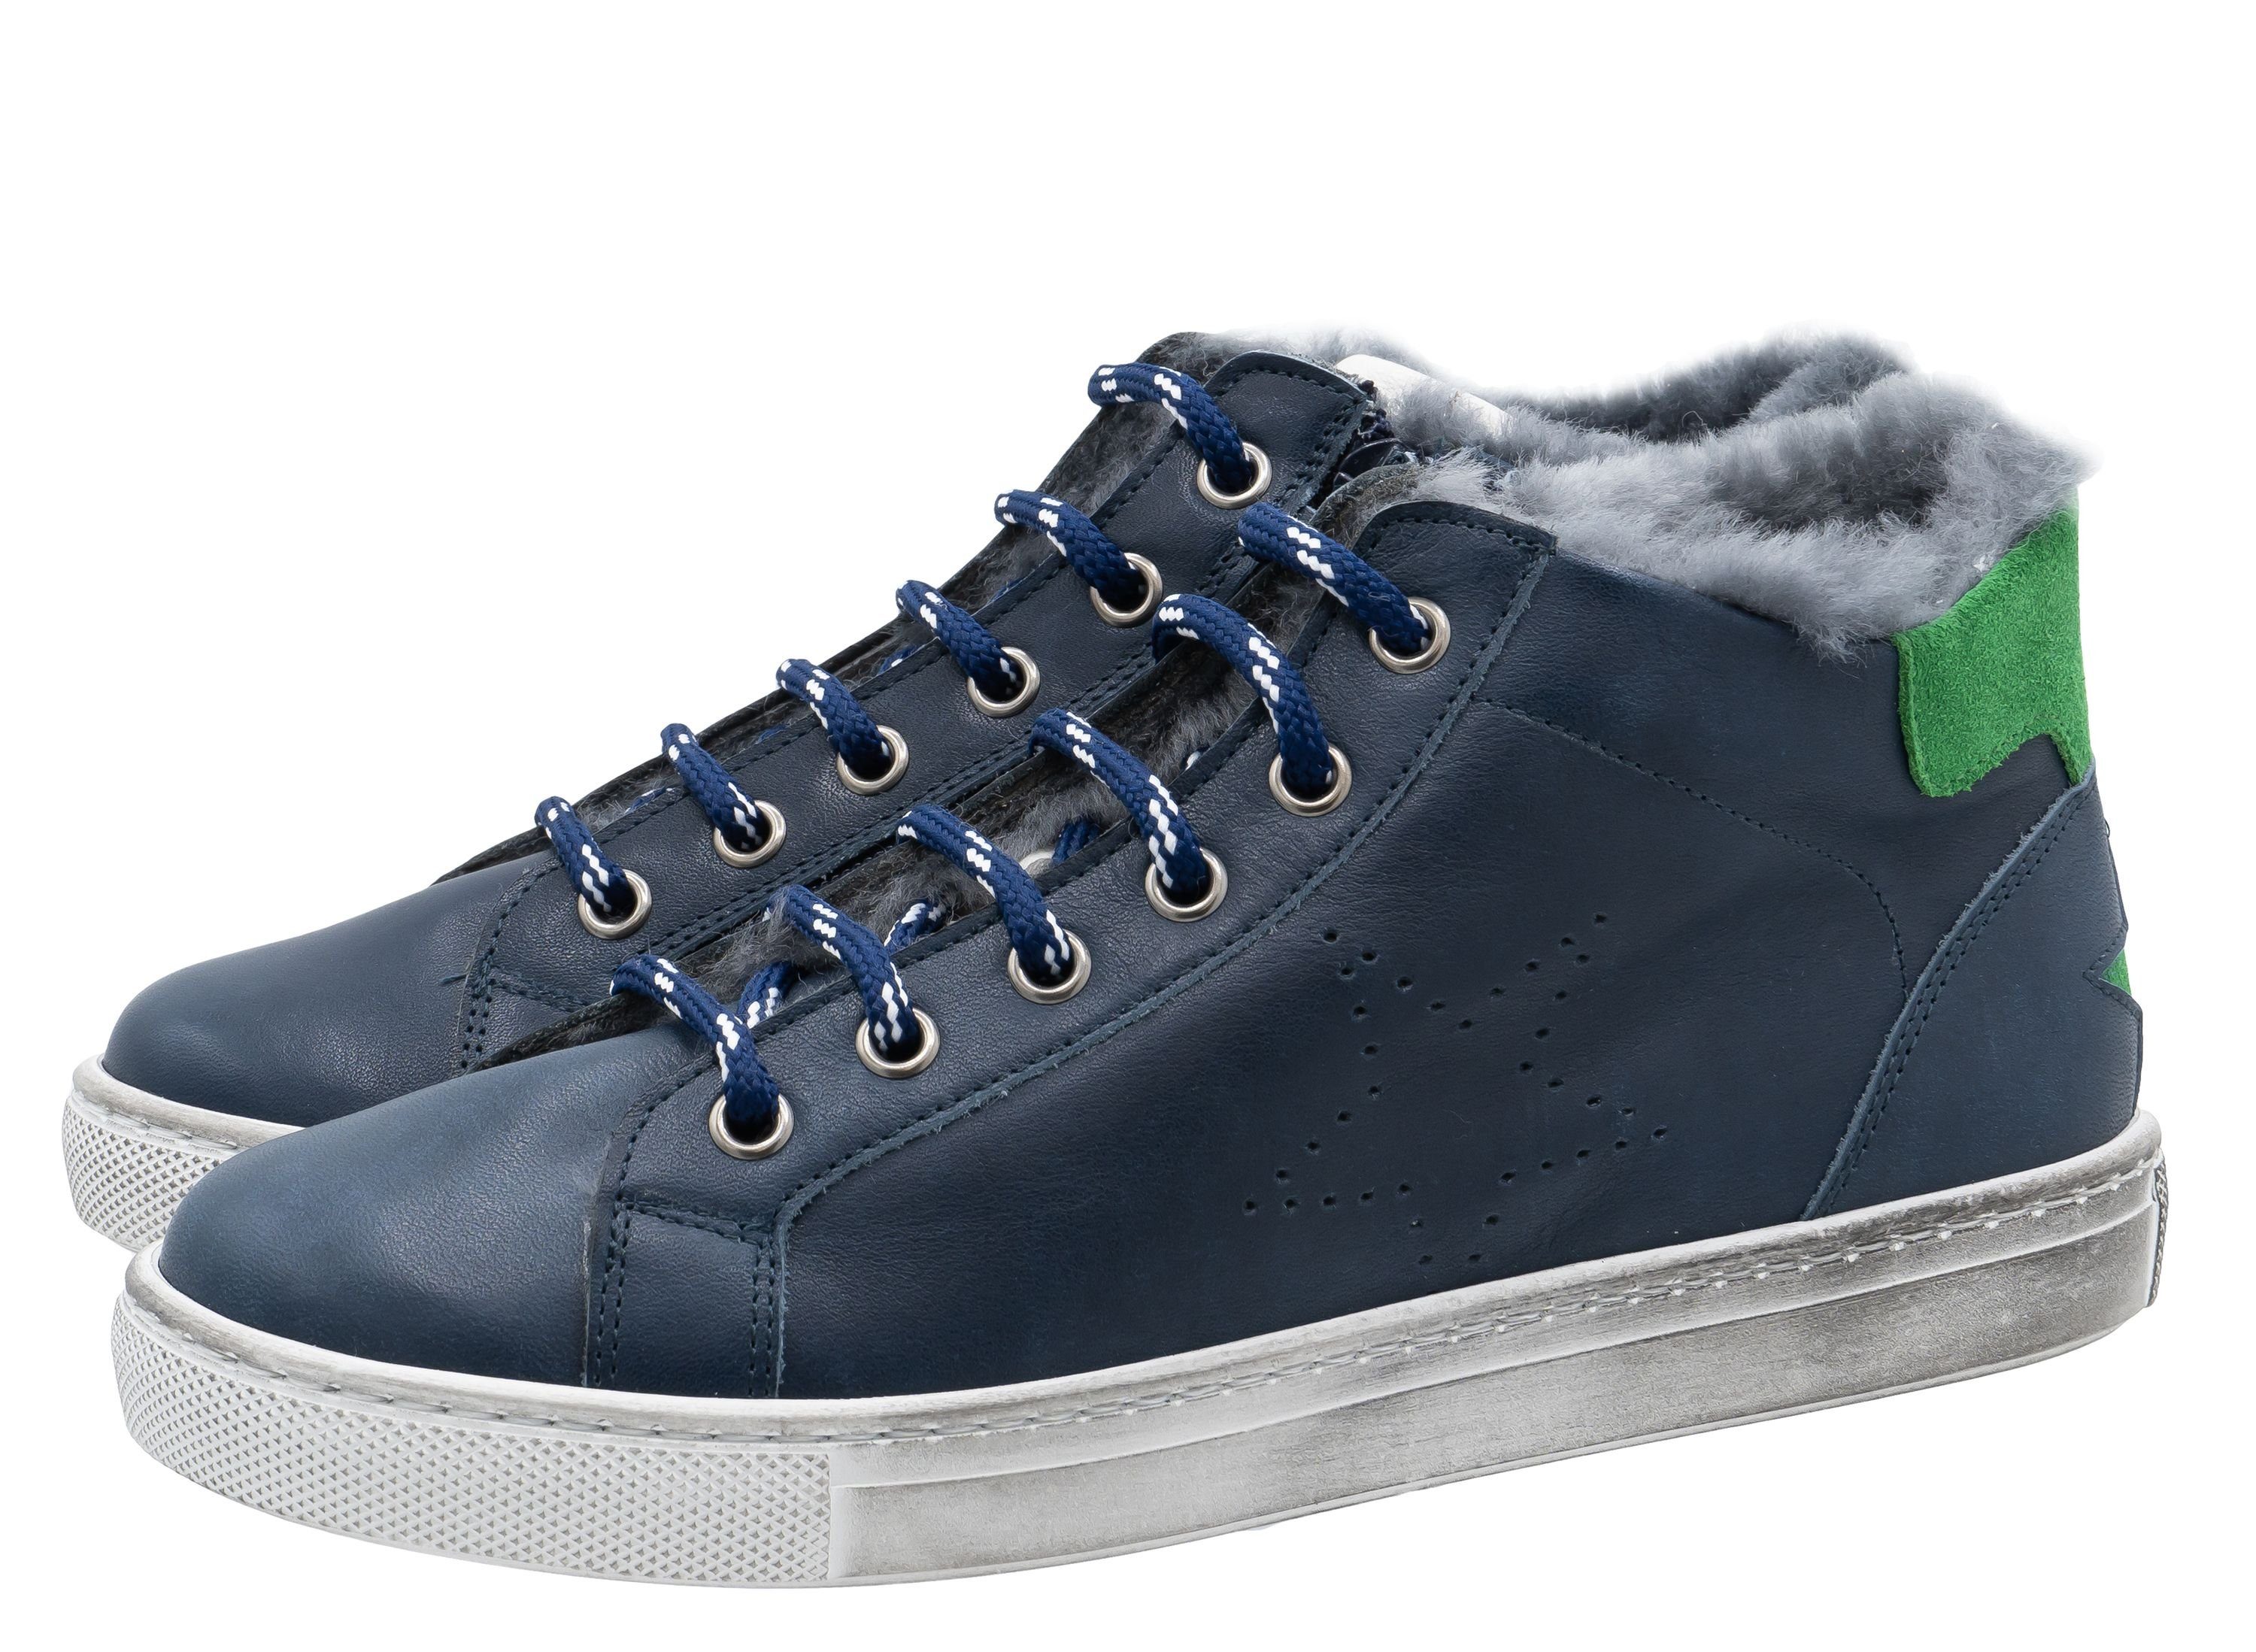 Zecchino d'Oro »Zecchino d'Oro Sneaker Junge F15-4688 Winterschuhe Lammfell  Blau« Schnürstiefelette online kaufen | OTTO